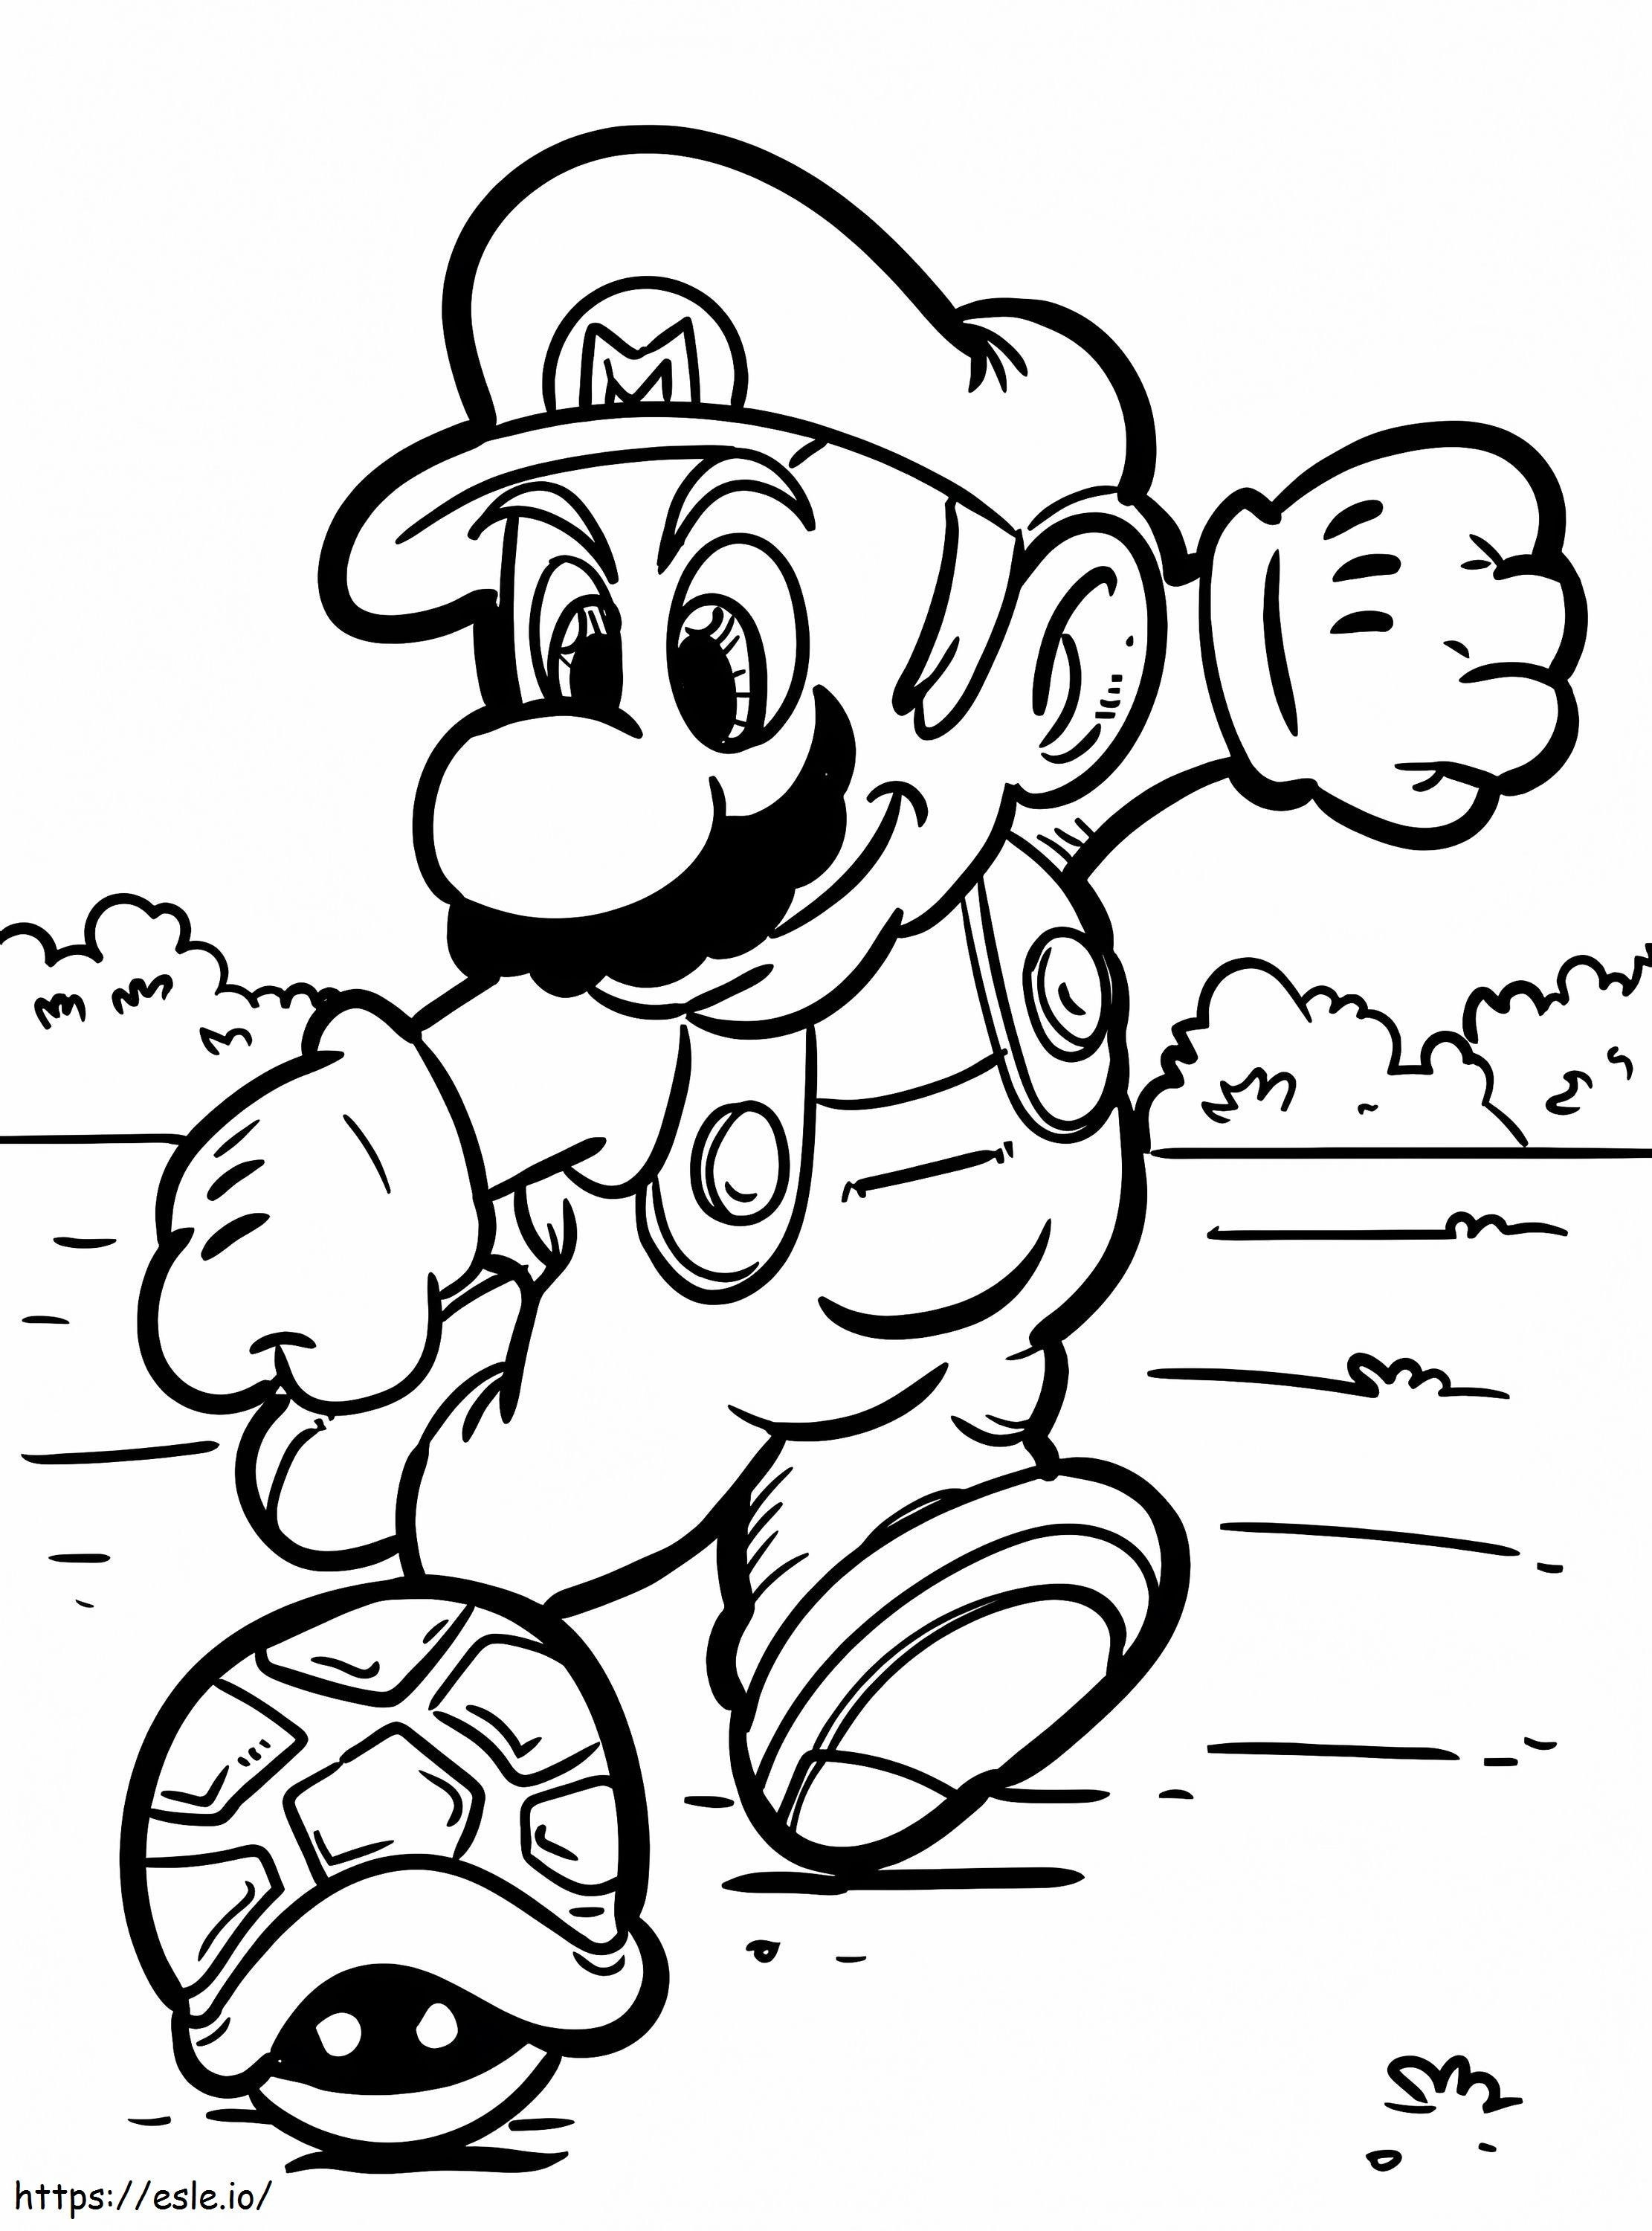 Mario Kicks ausmalbilder